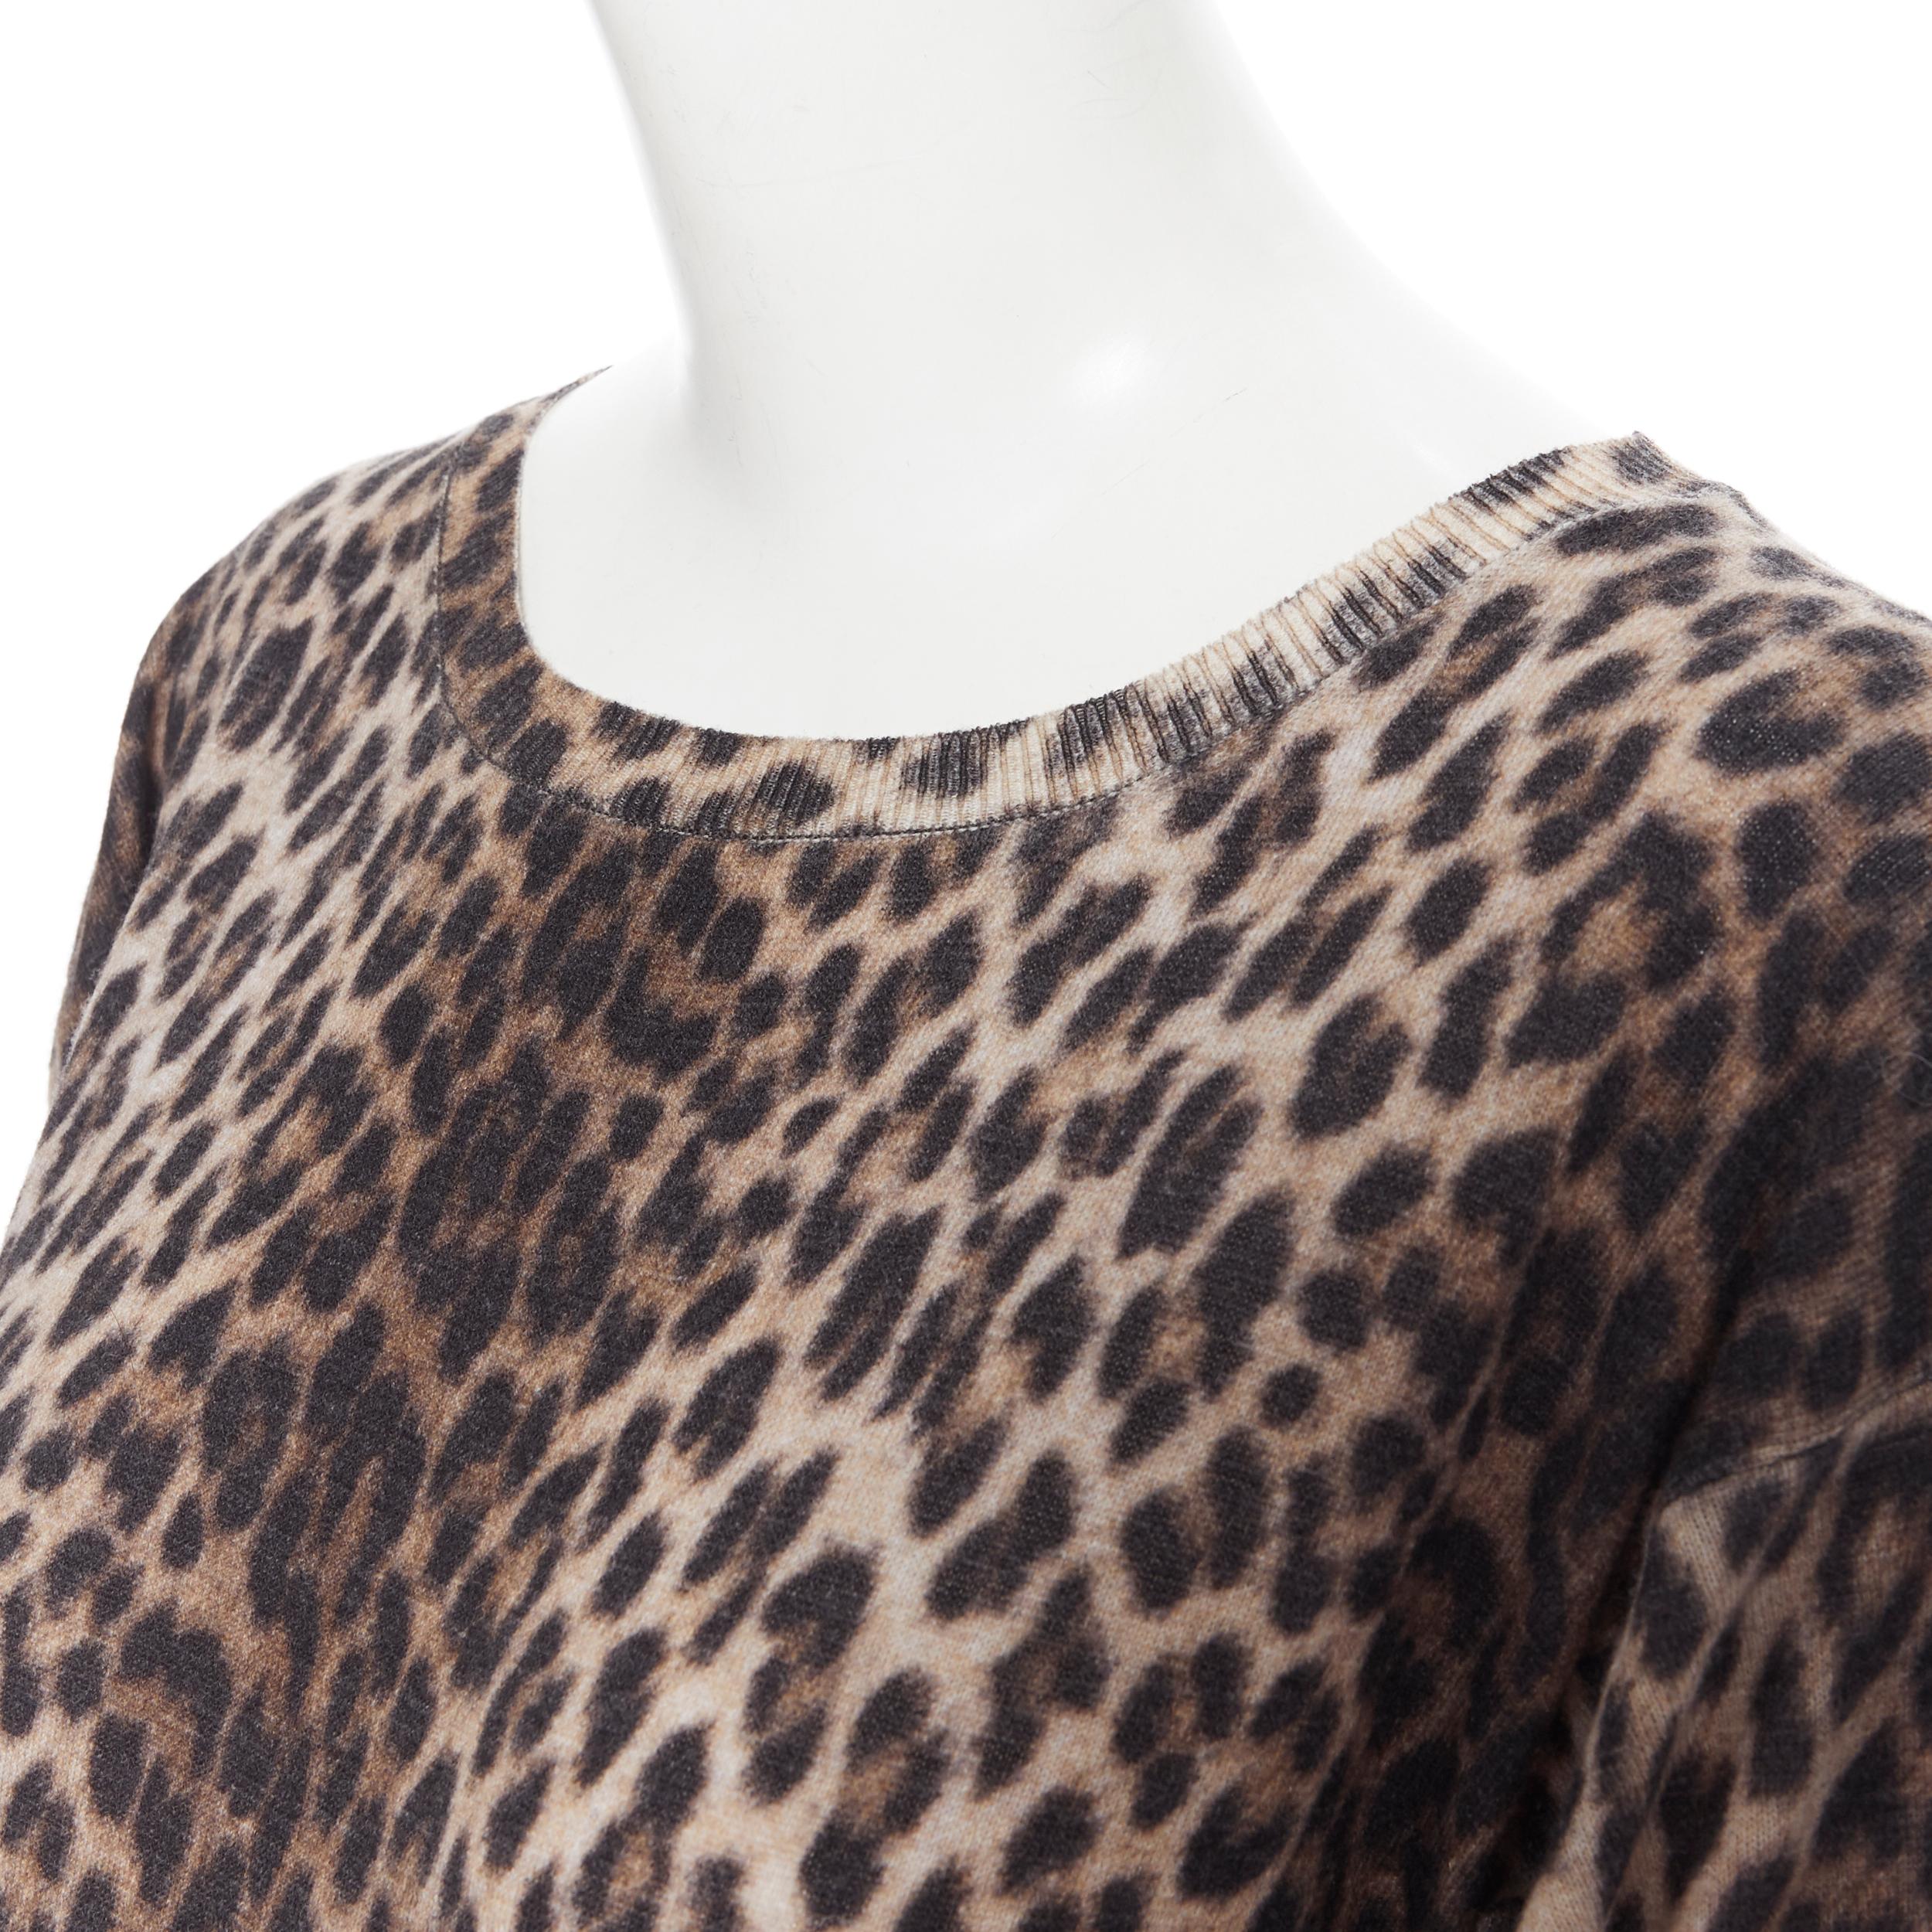 LANVIN ELBAZ 2010 100% wool brown leopard spot 3/4 sleeve knit sweater dress XS 2